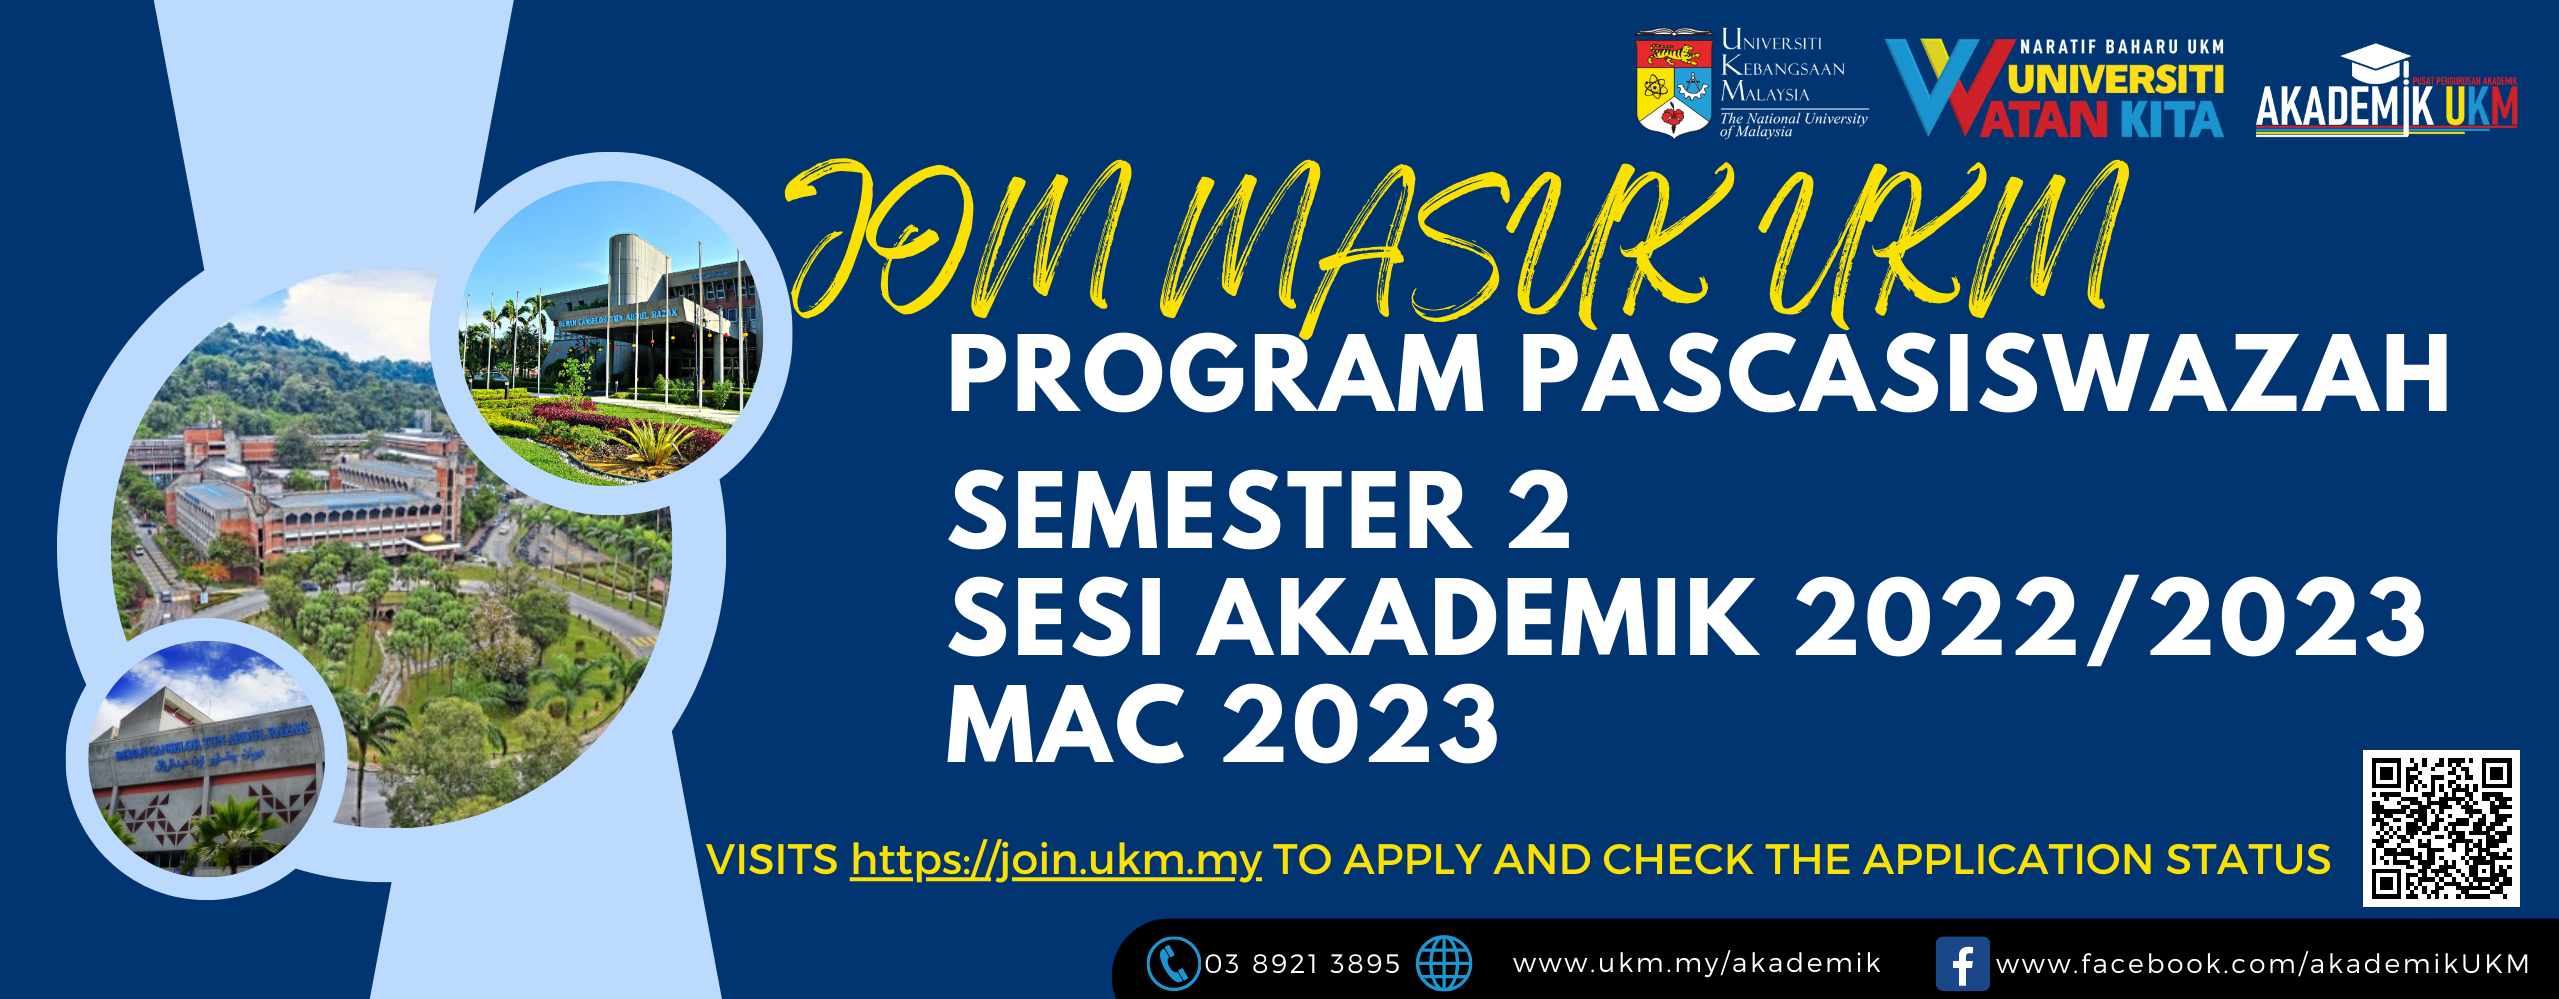 Kemasukan Program Pascasiswazah Semester 2 2022/2023